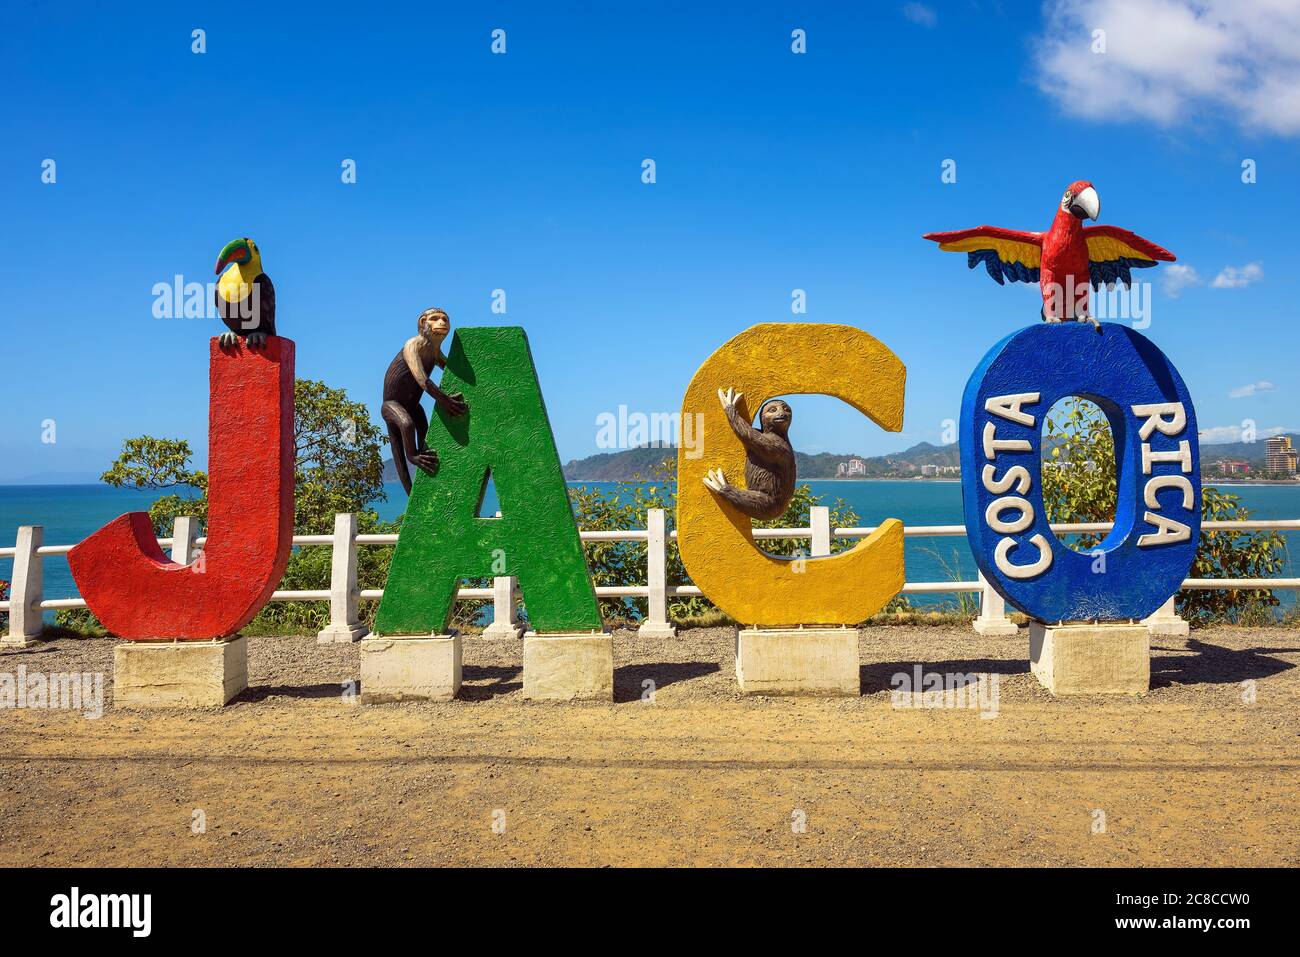 Jaco, Costa Rica - 14. Januar 2020: Buntes Eintrittschild für die Stadt Jaco in Costa Rica. Stockfoto